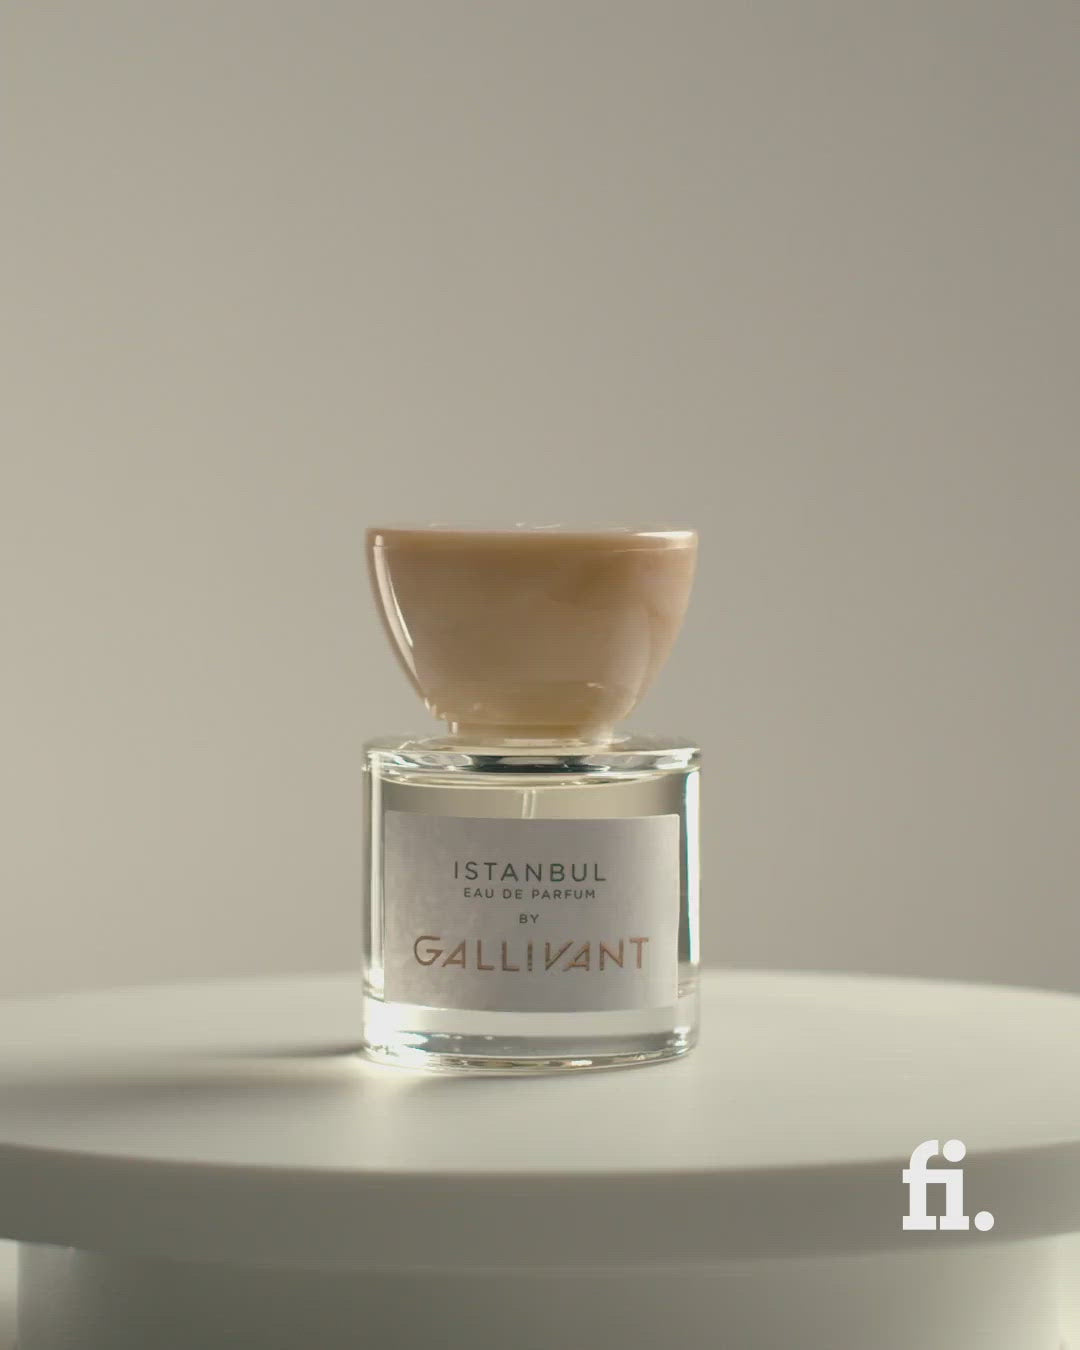 Video of Istanbul 30ml Eau de Parfum by Gallivant